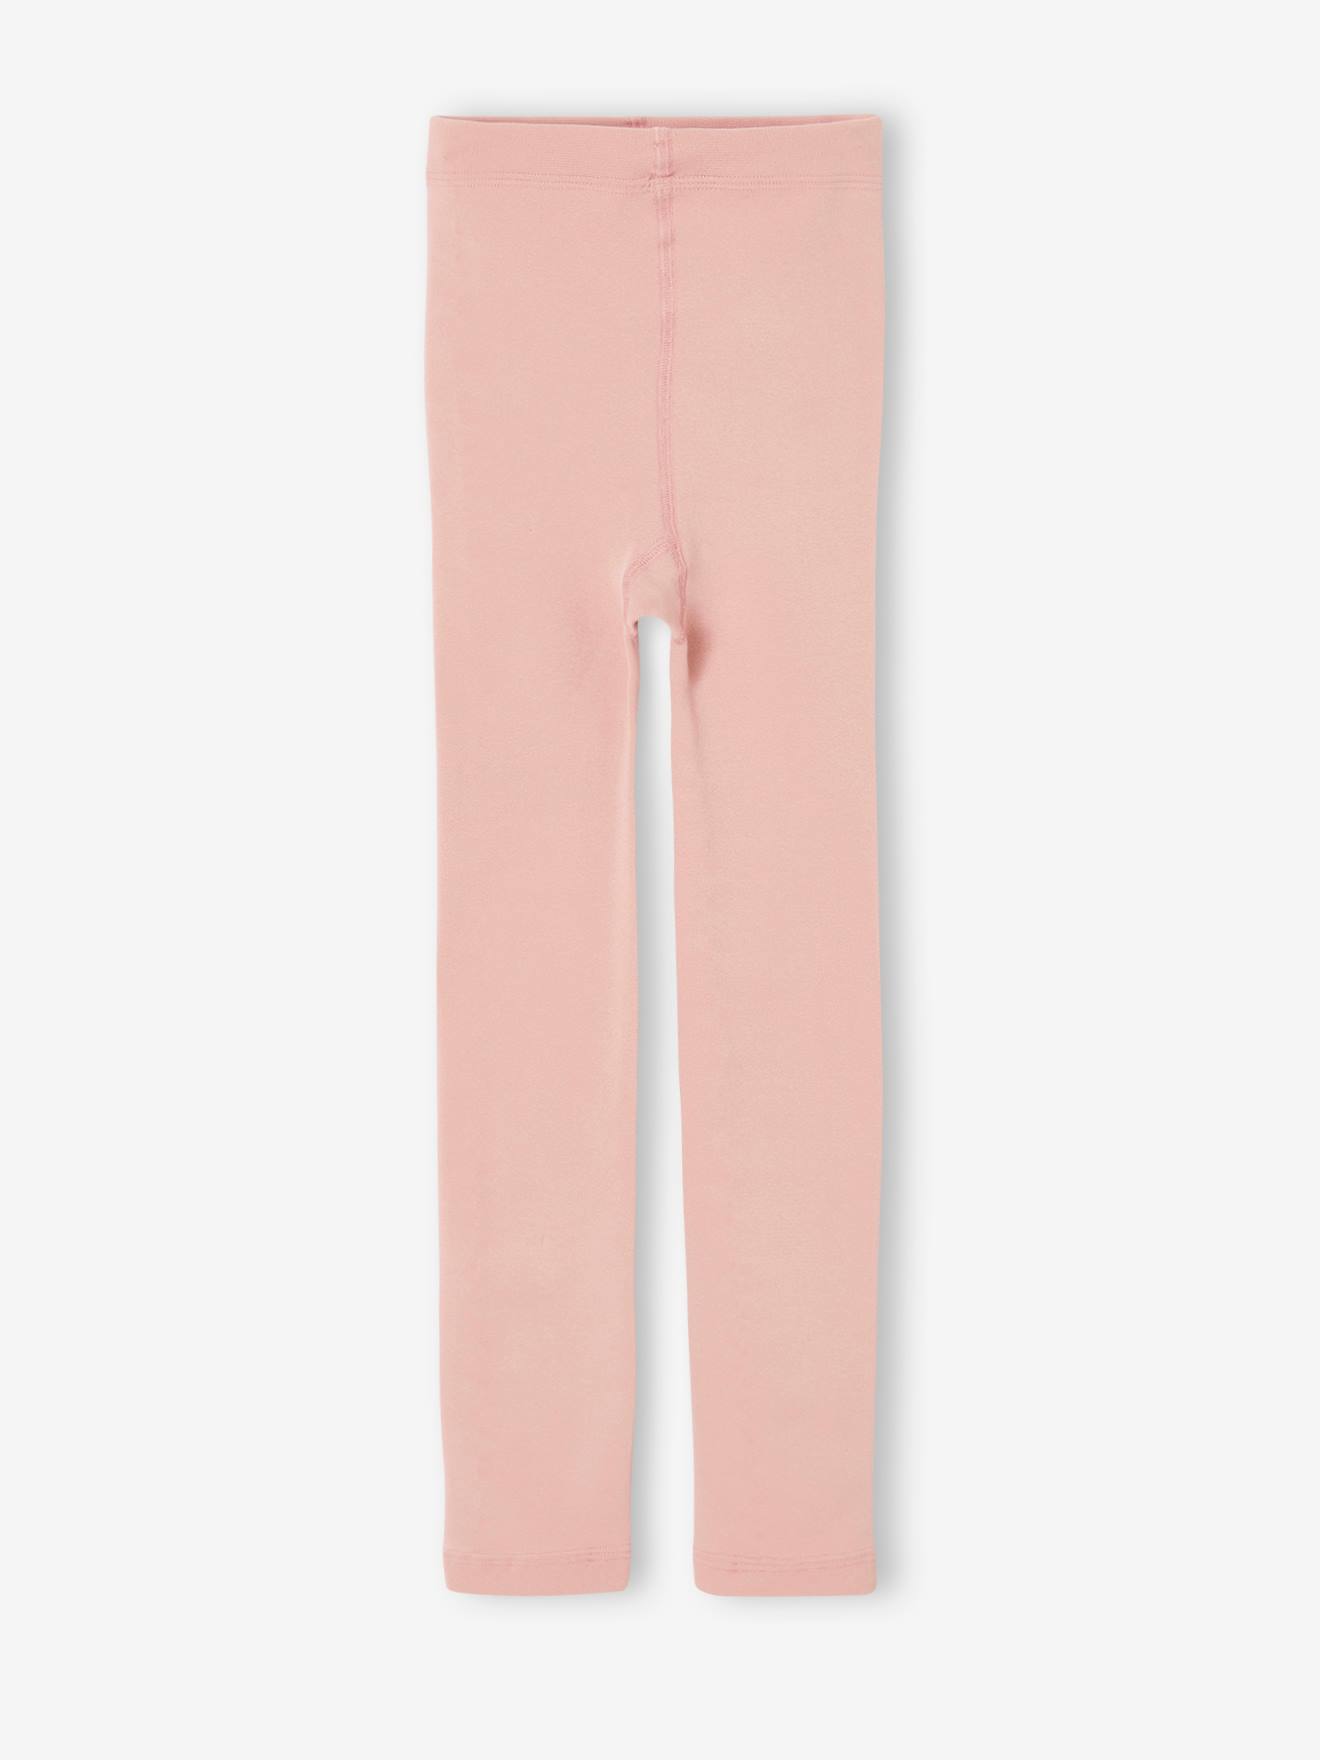 Fleece-legging voor meisjes roze (poederkleur)